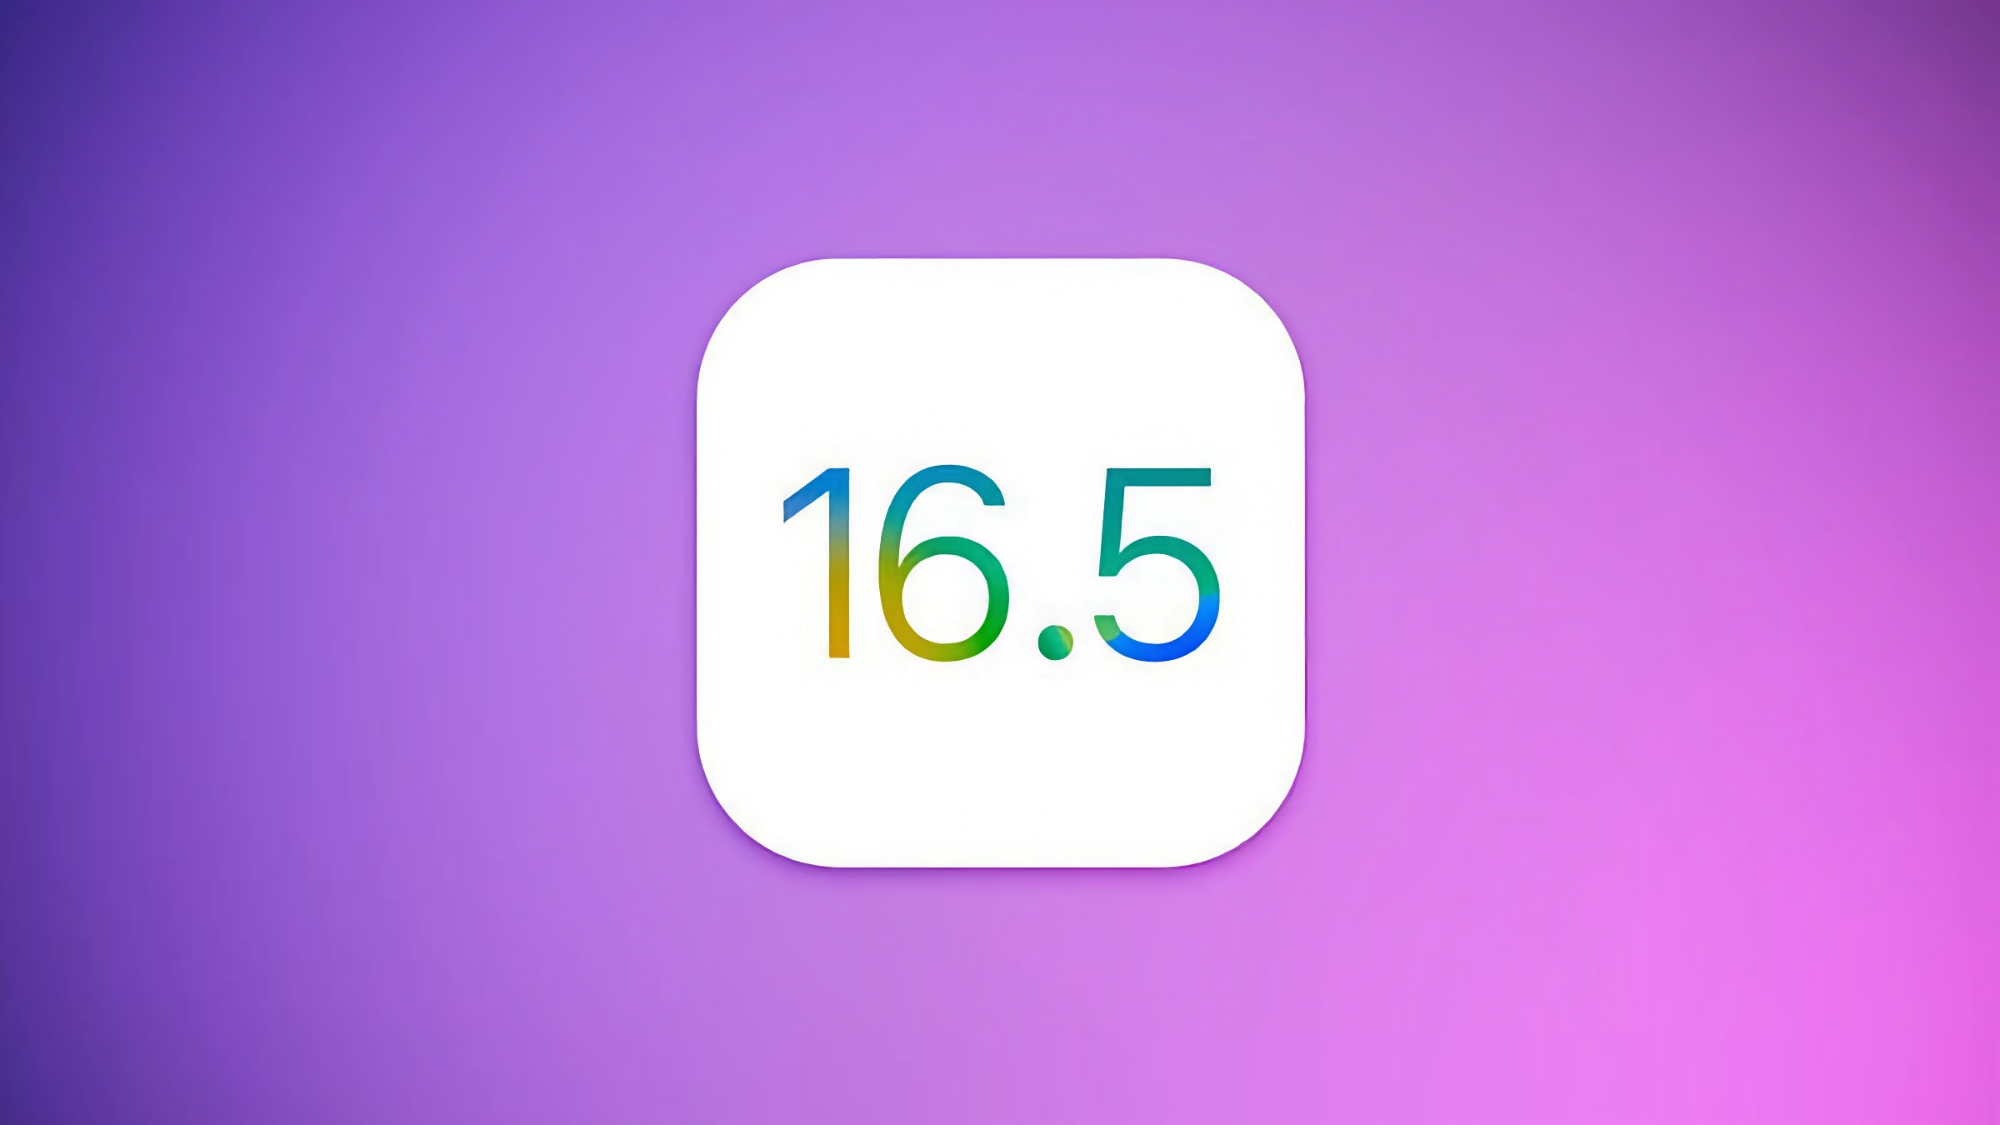 Apple випустила першу бета-версію iOS 16.5